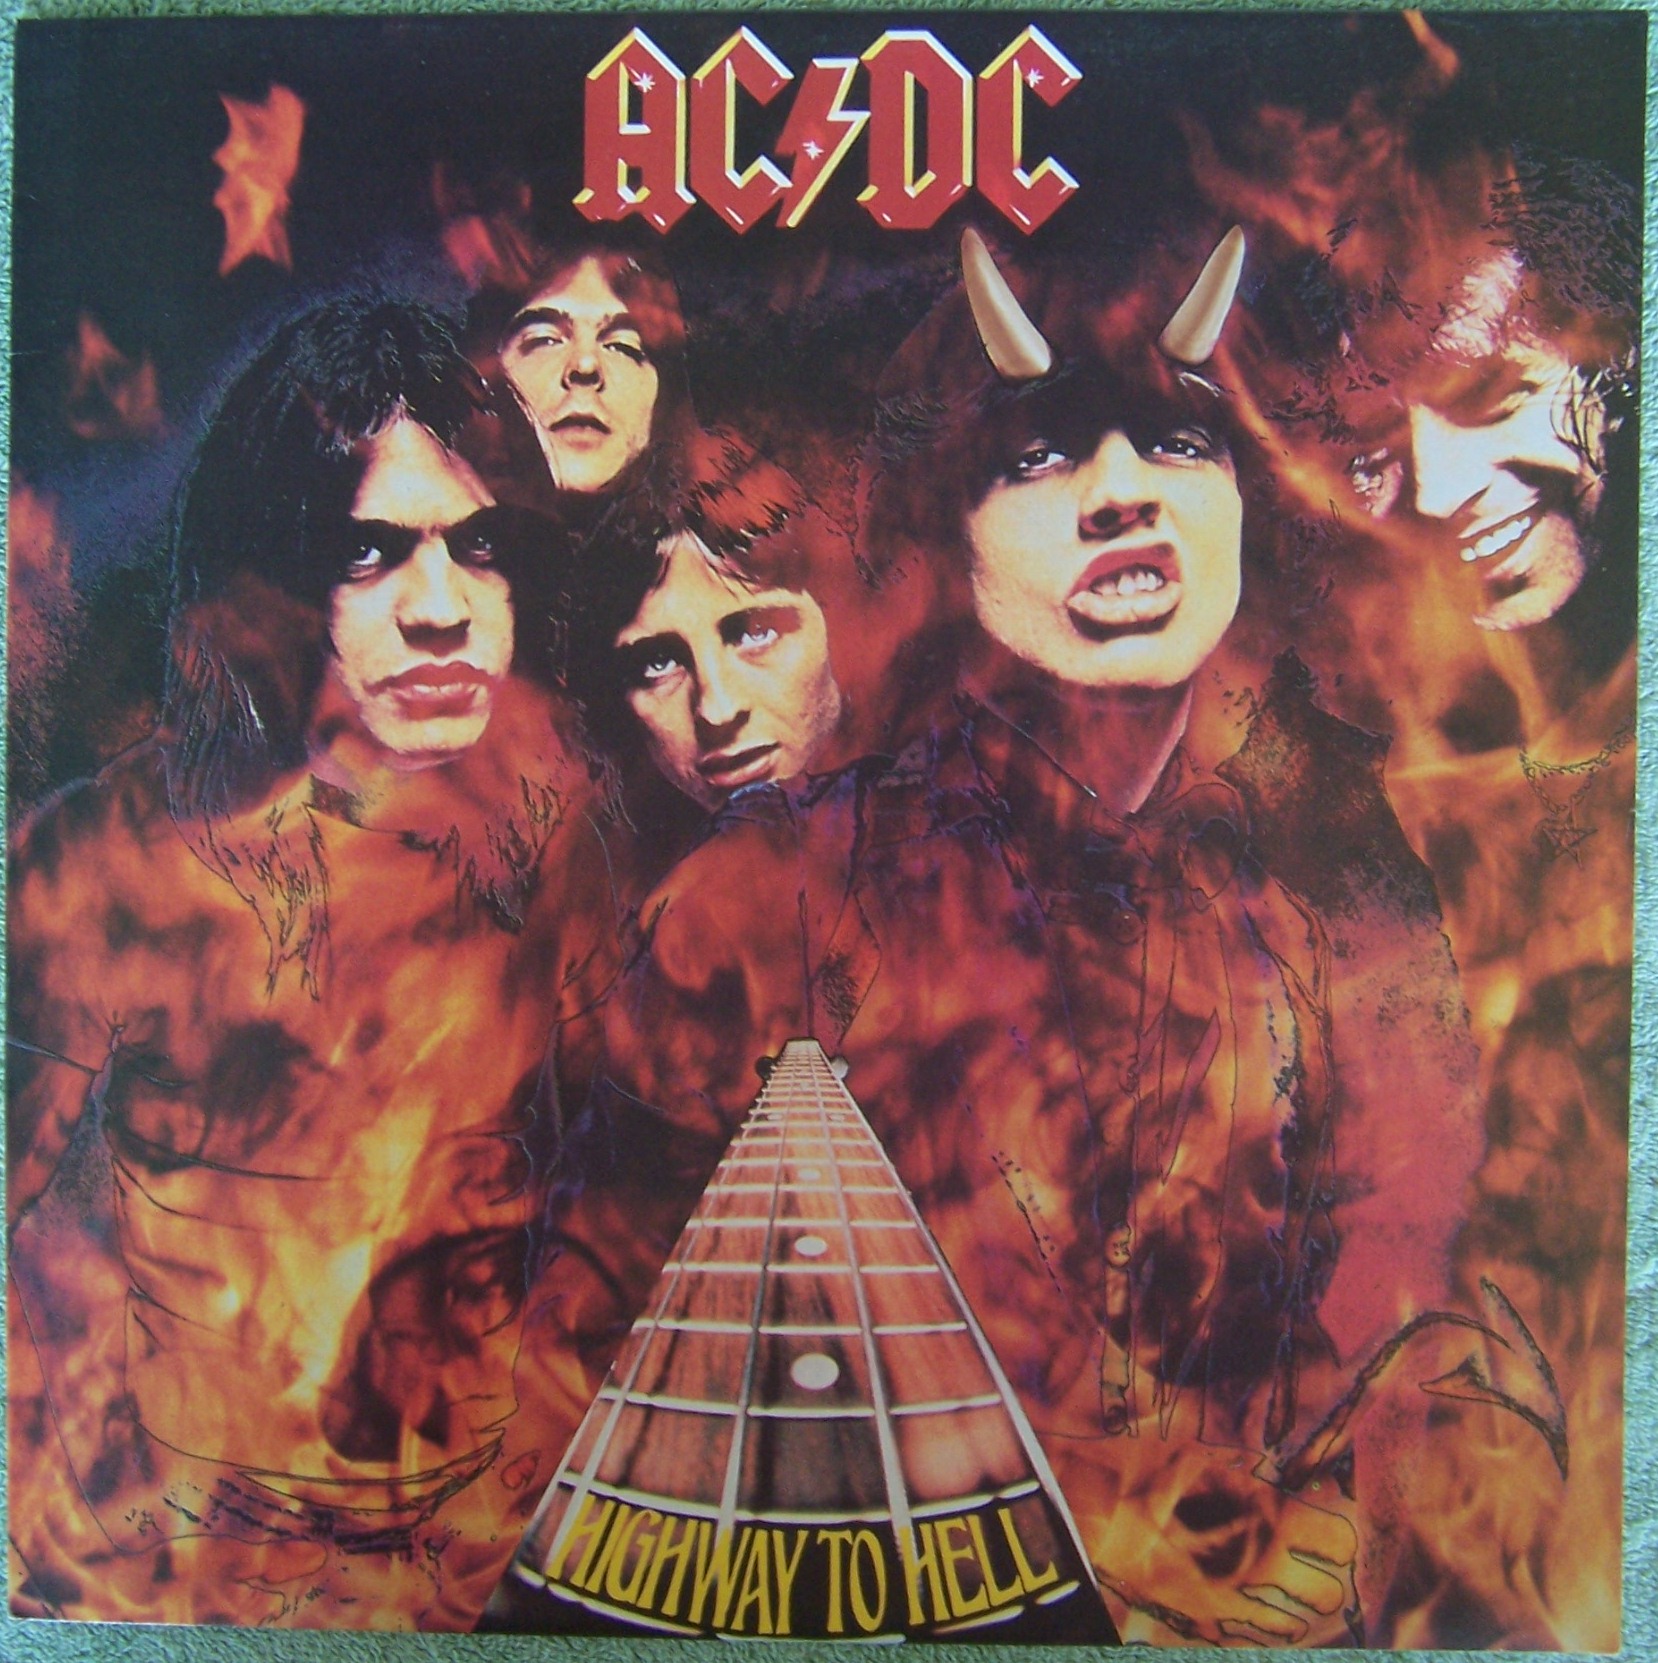 Acdc highway to hell. AC DC Highway to Hell 1979. AC DC Highway to Hell 1979 обложка. AC DC 1979 альбом. AC DC Highway to Hell виниловая пластинка.